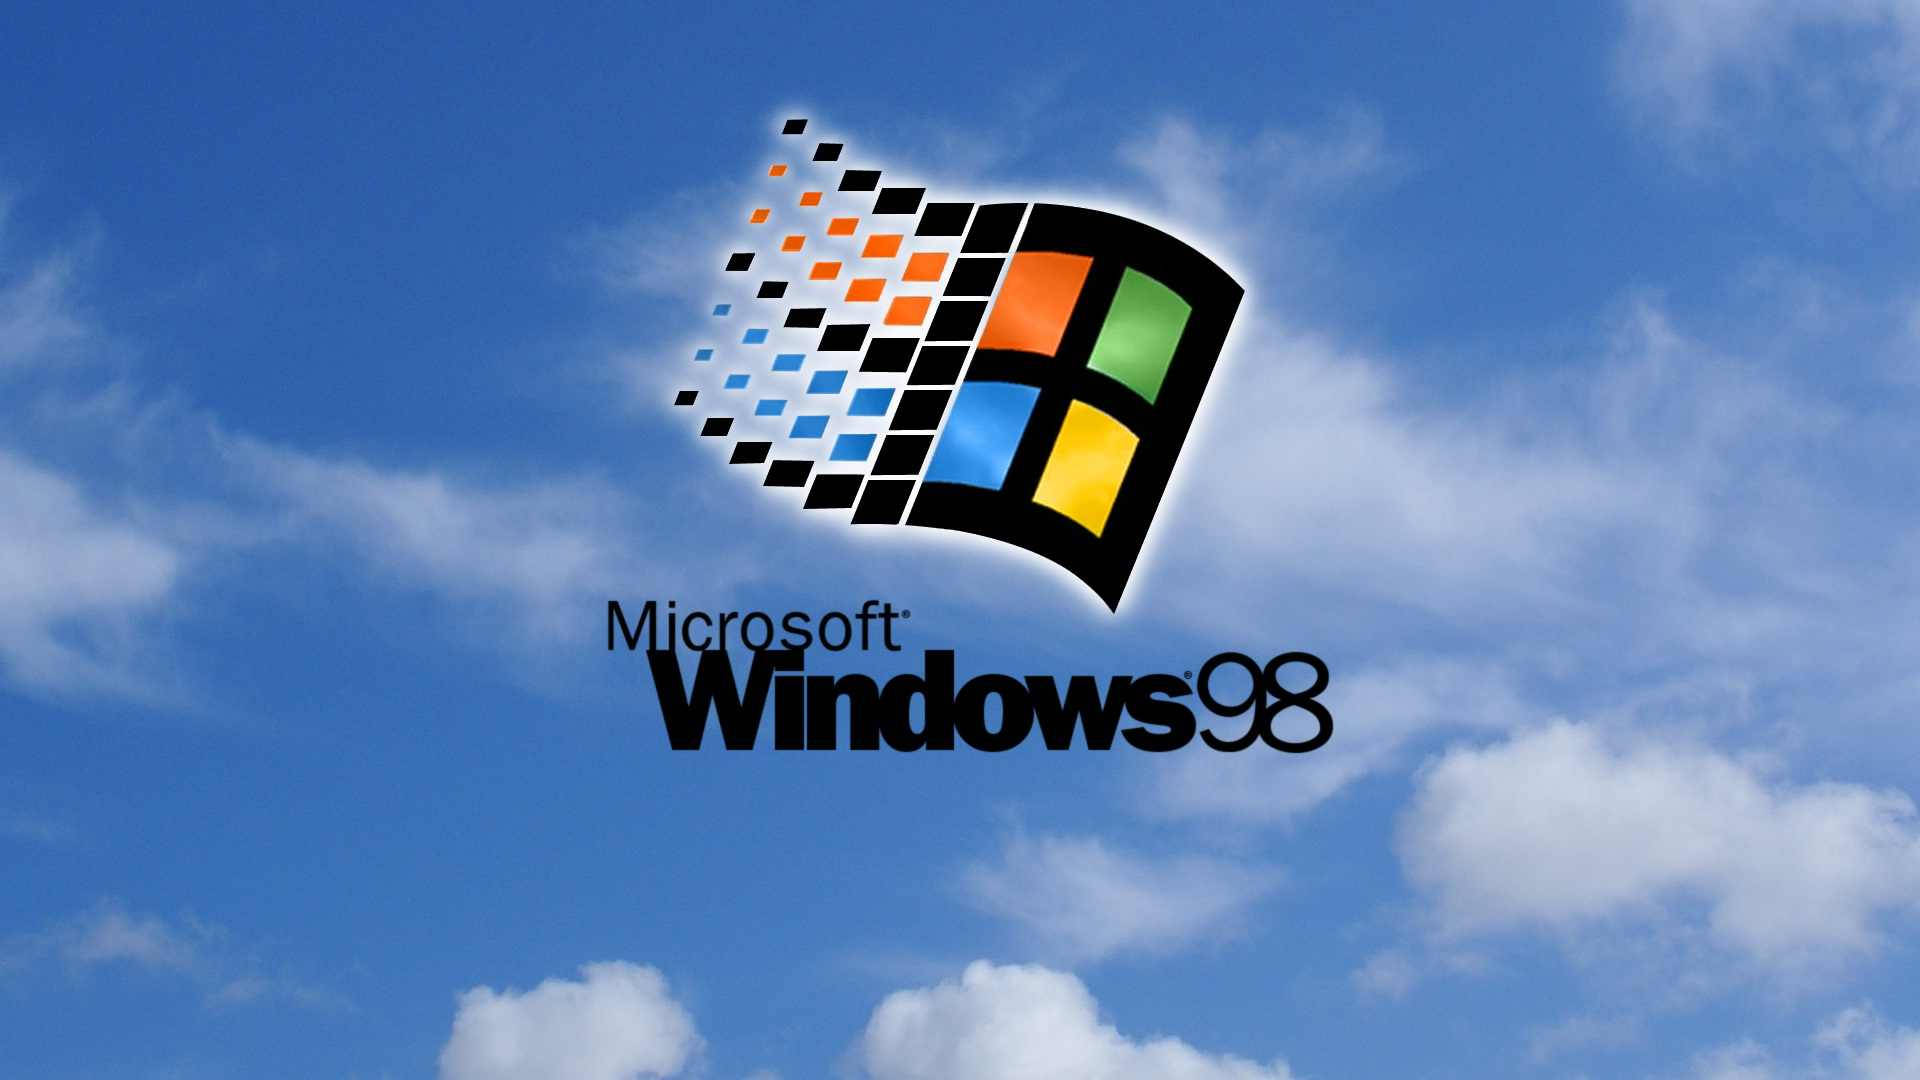 Erinnernsie Sich An Das Nostalgische Windows 98-erlebnis Wallpaper